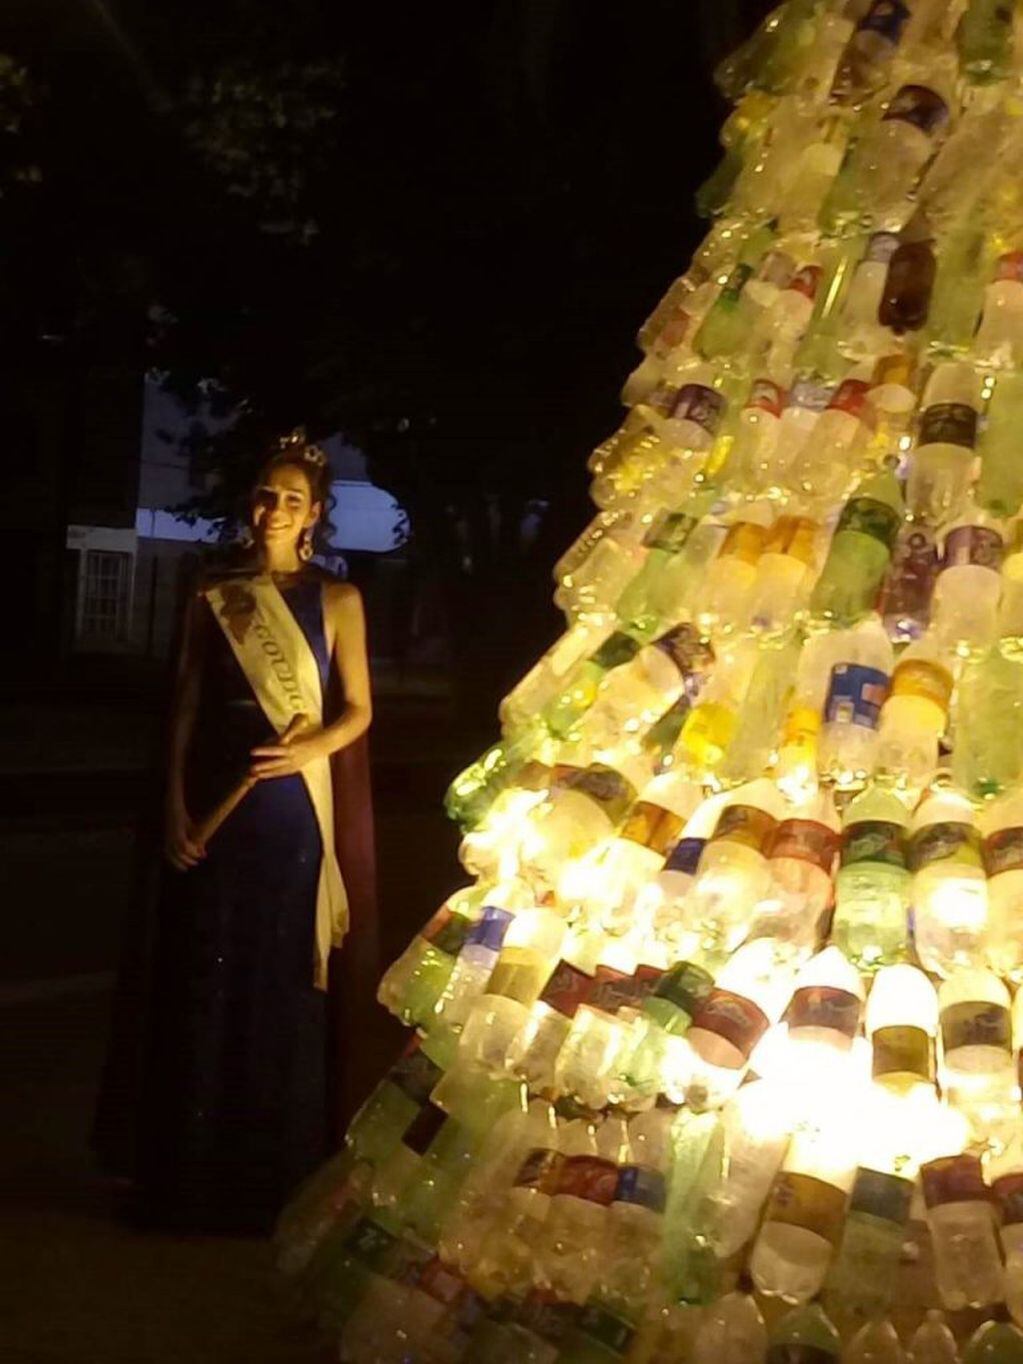 La reina vendimial de Goudge, Romina Pérez, junto al árbol Navideño con botellas plásticas